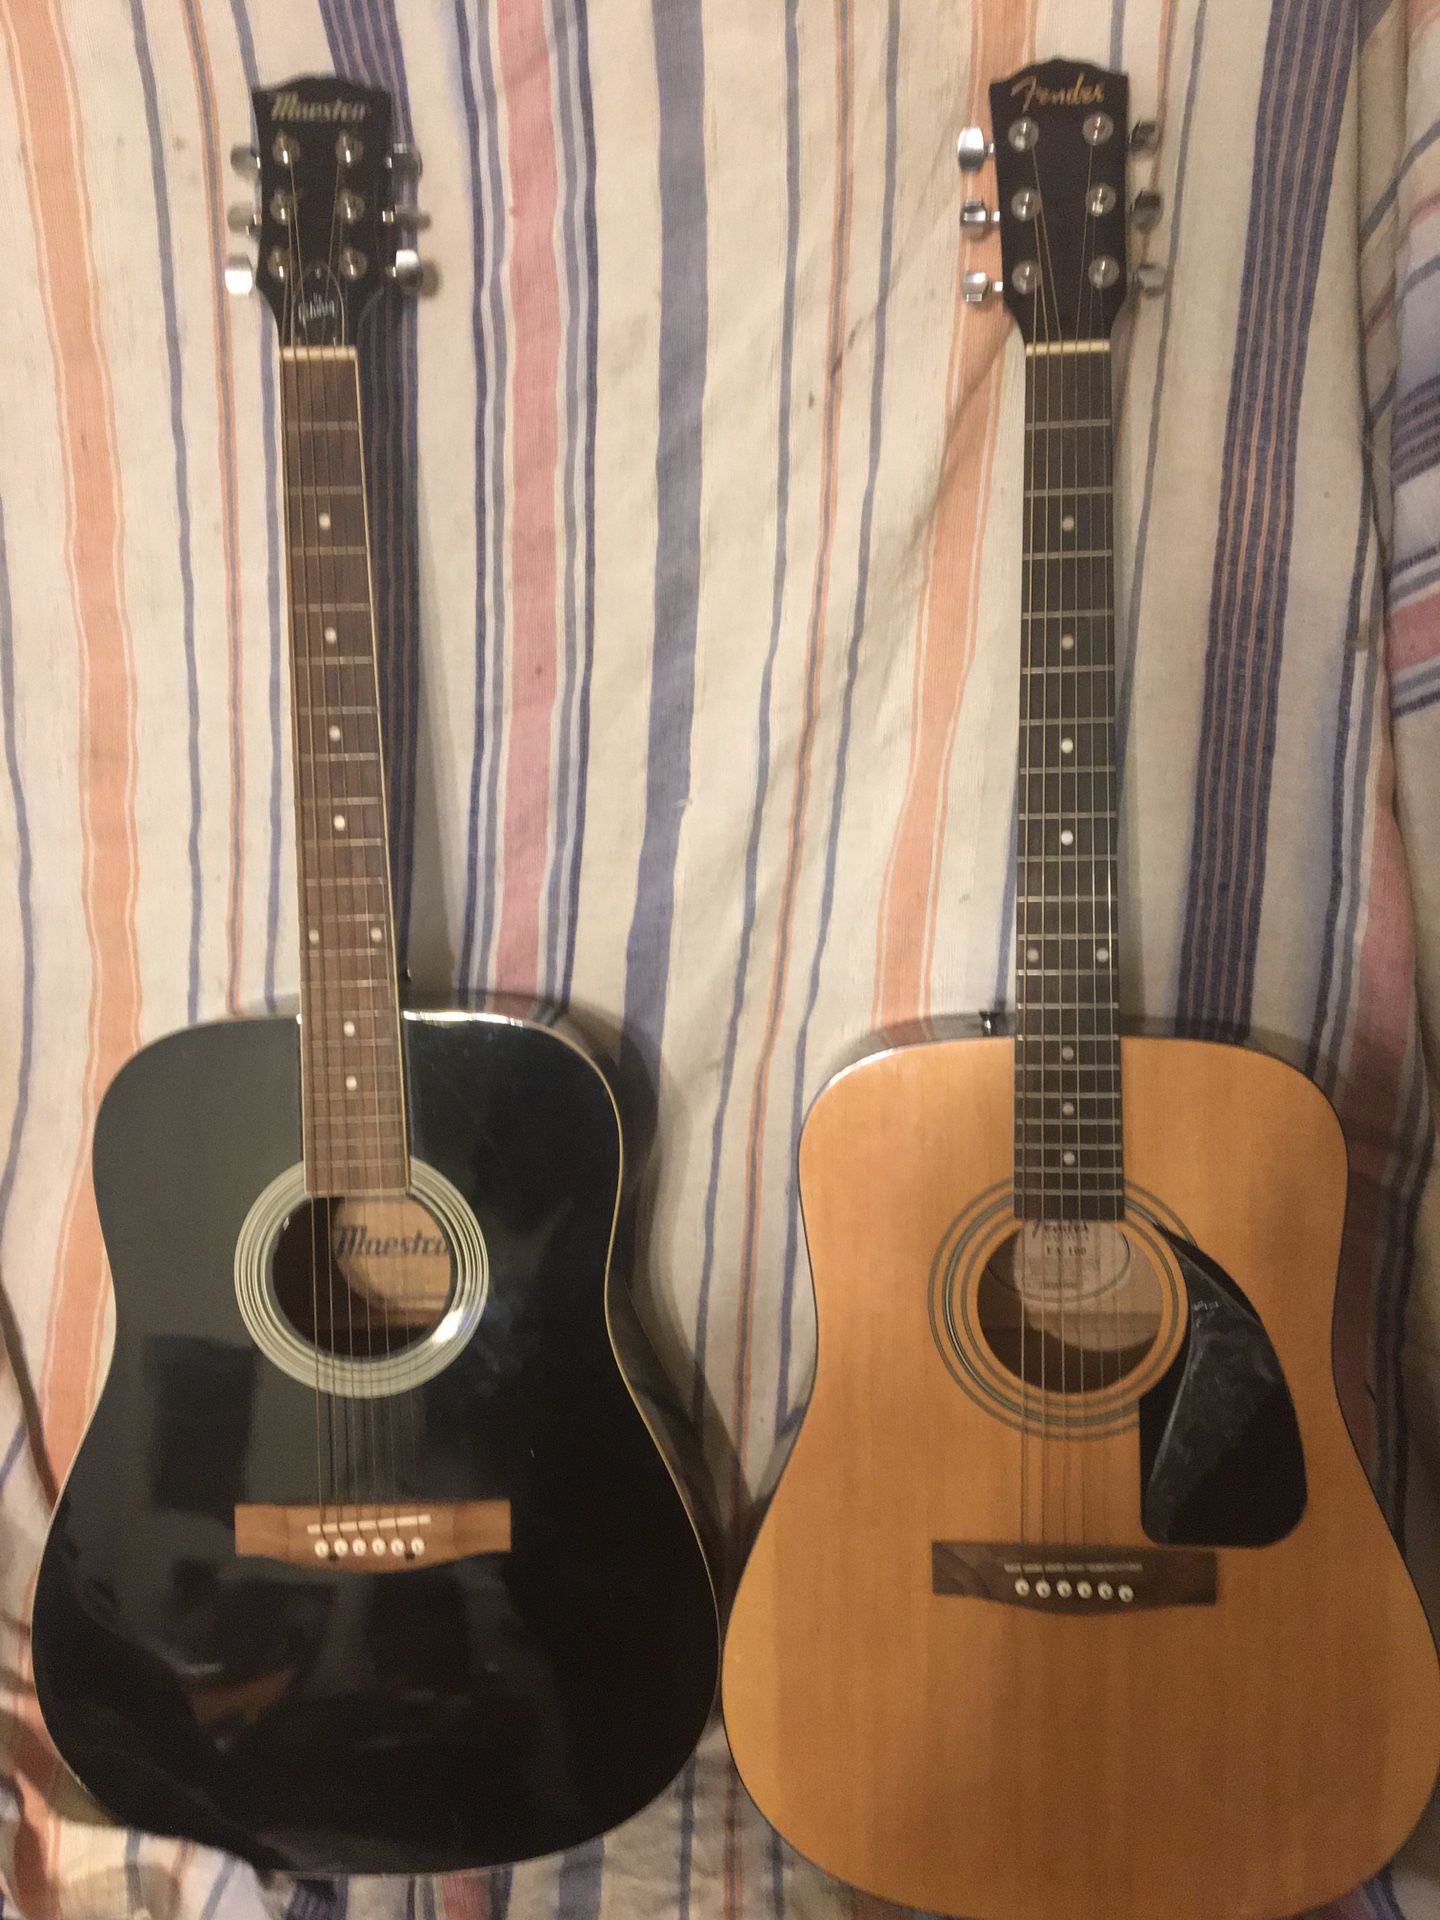 Acoustic Guitars 80. Each